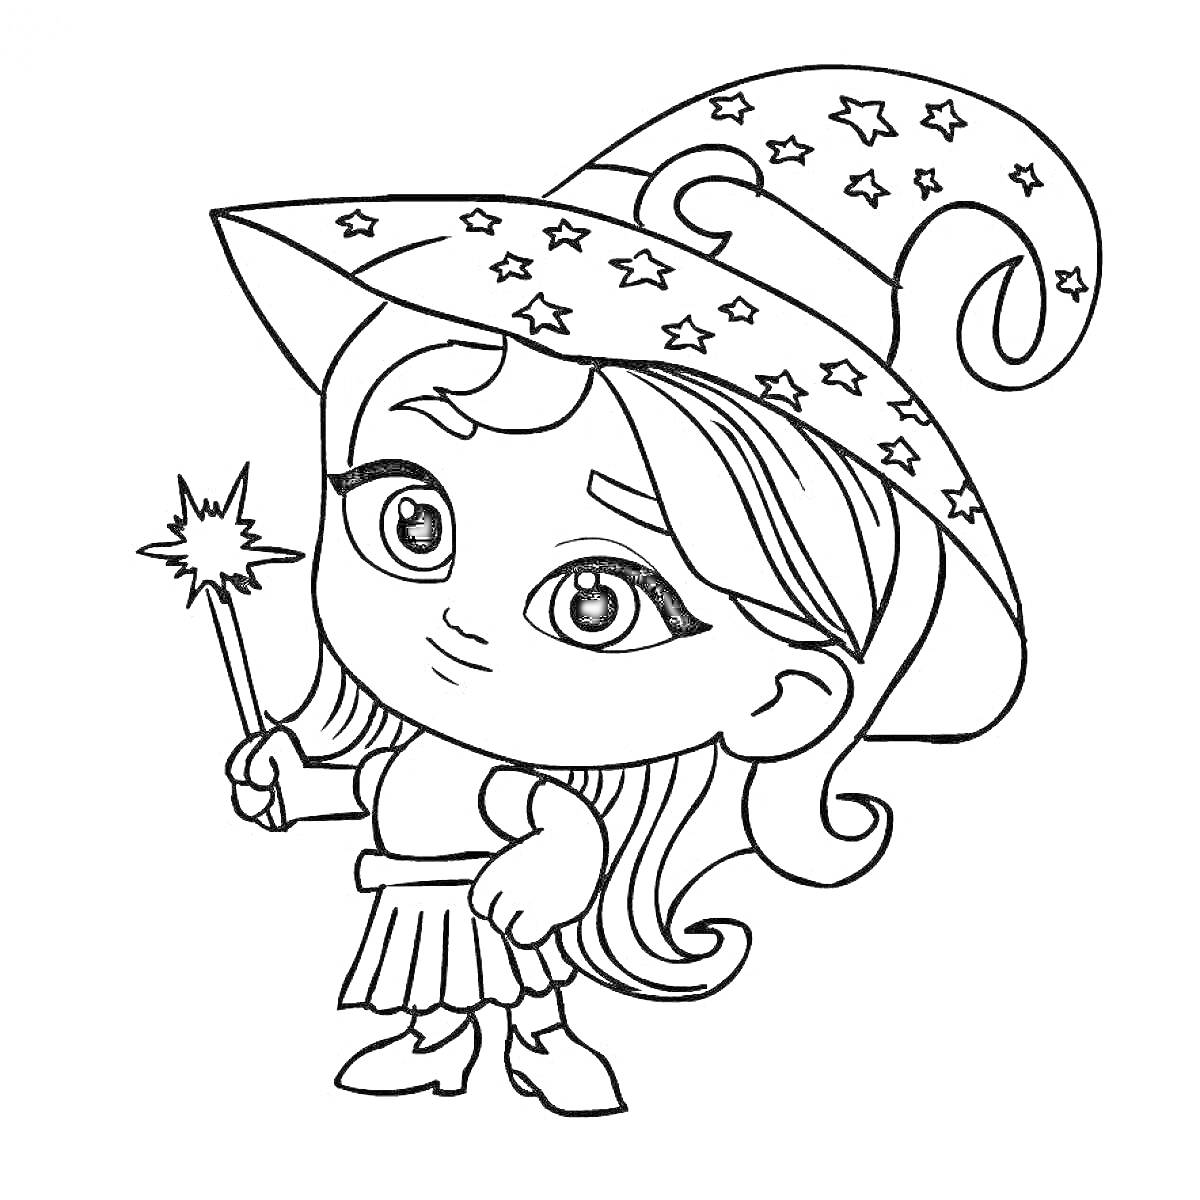 Раскраска Девочка в волшебной шляпе со звездочками, держащая волшебную палочку